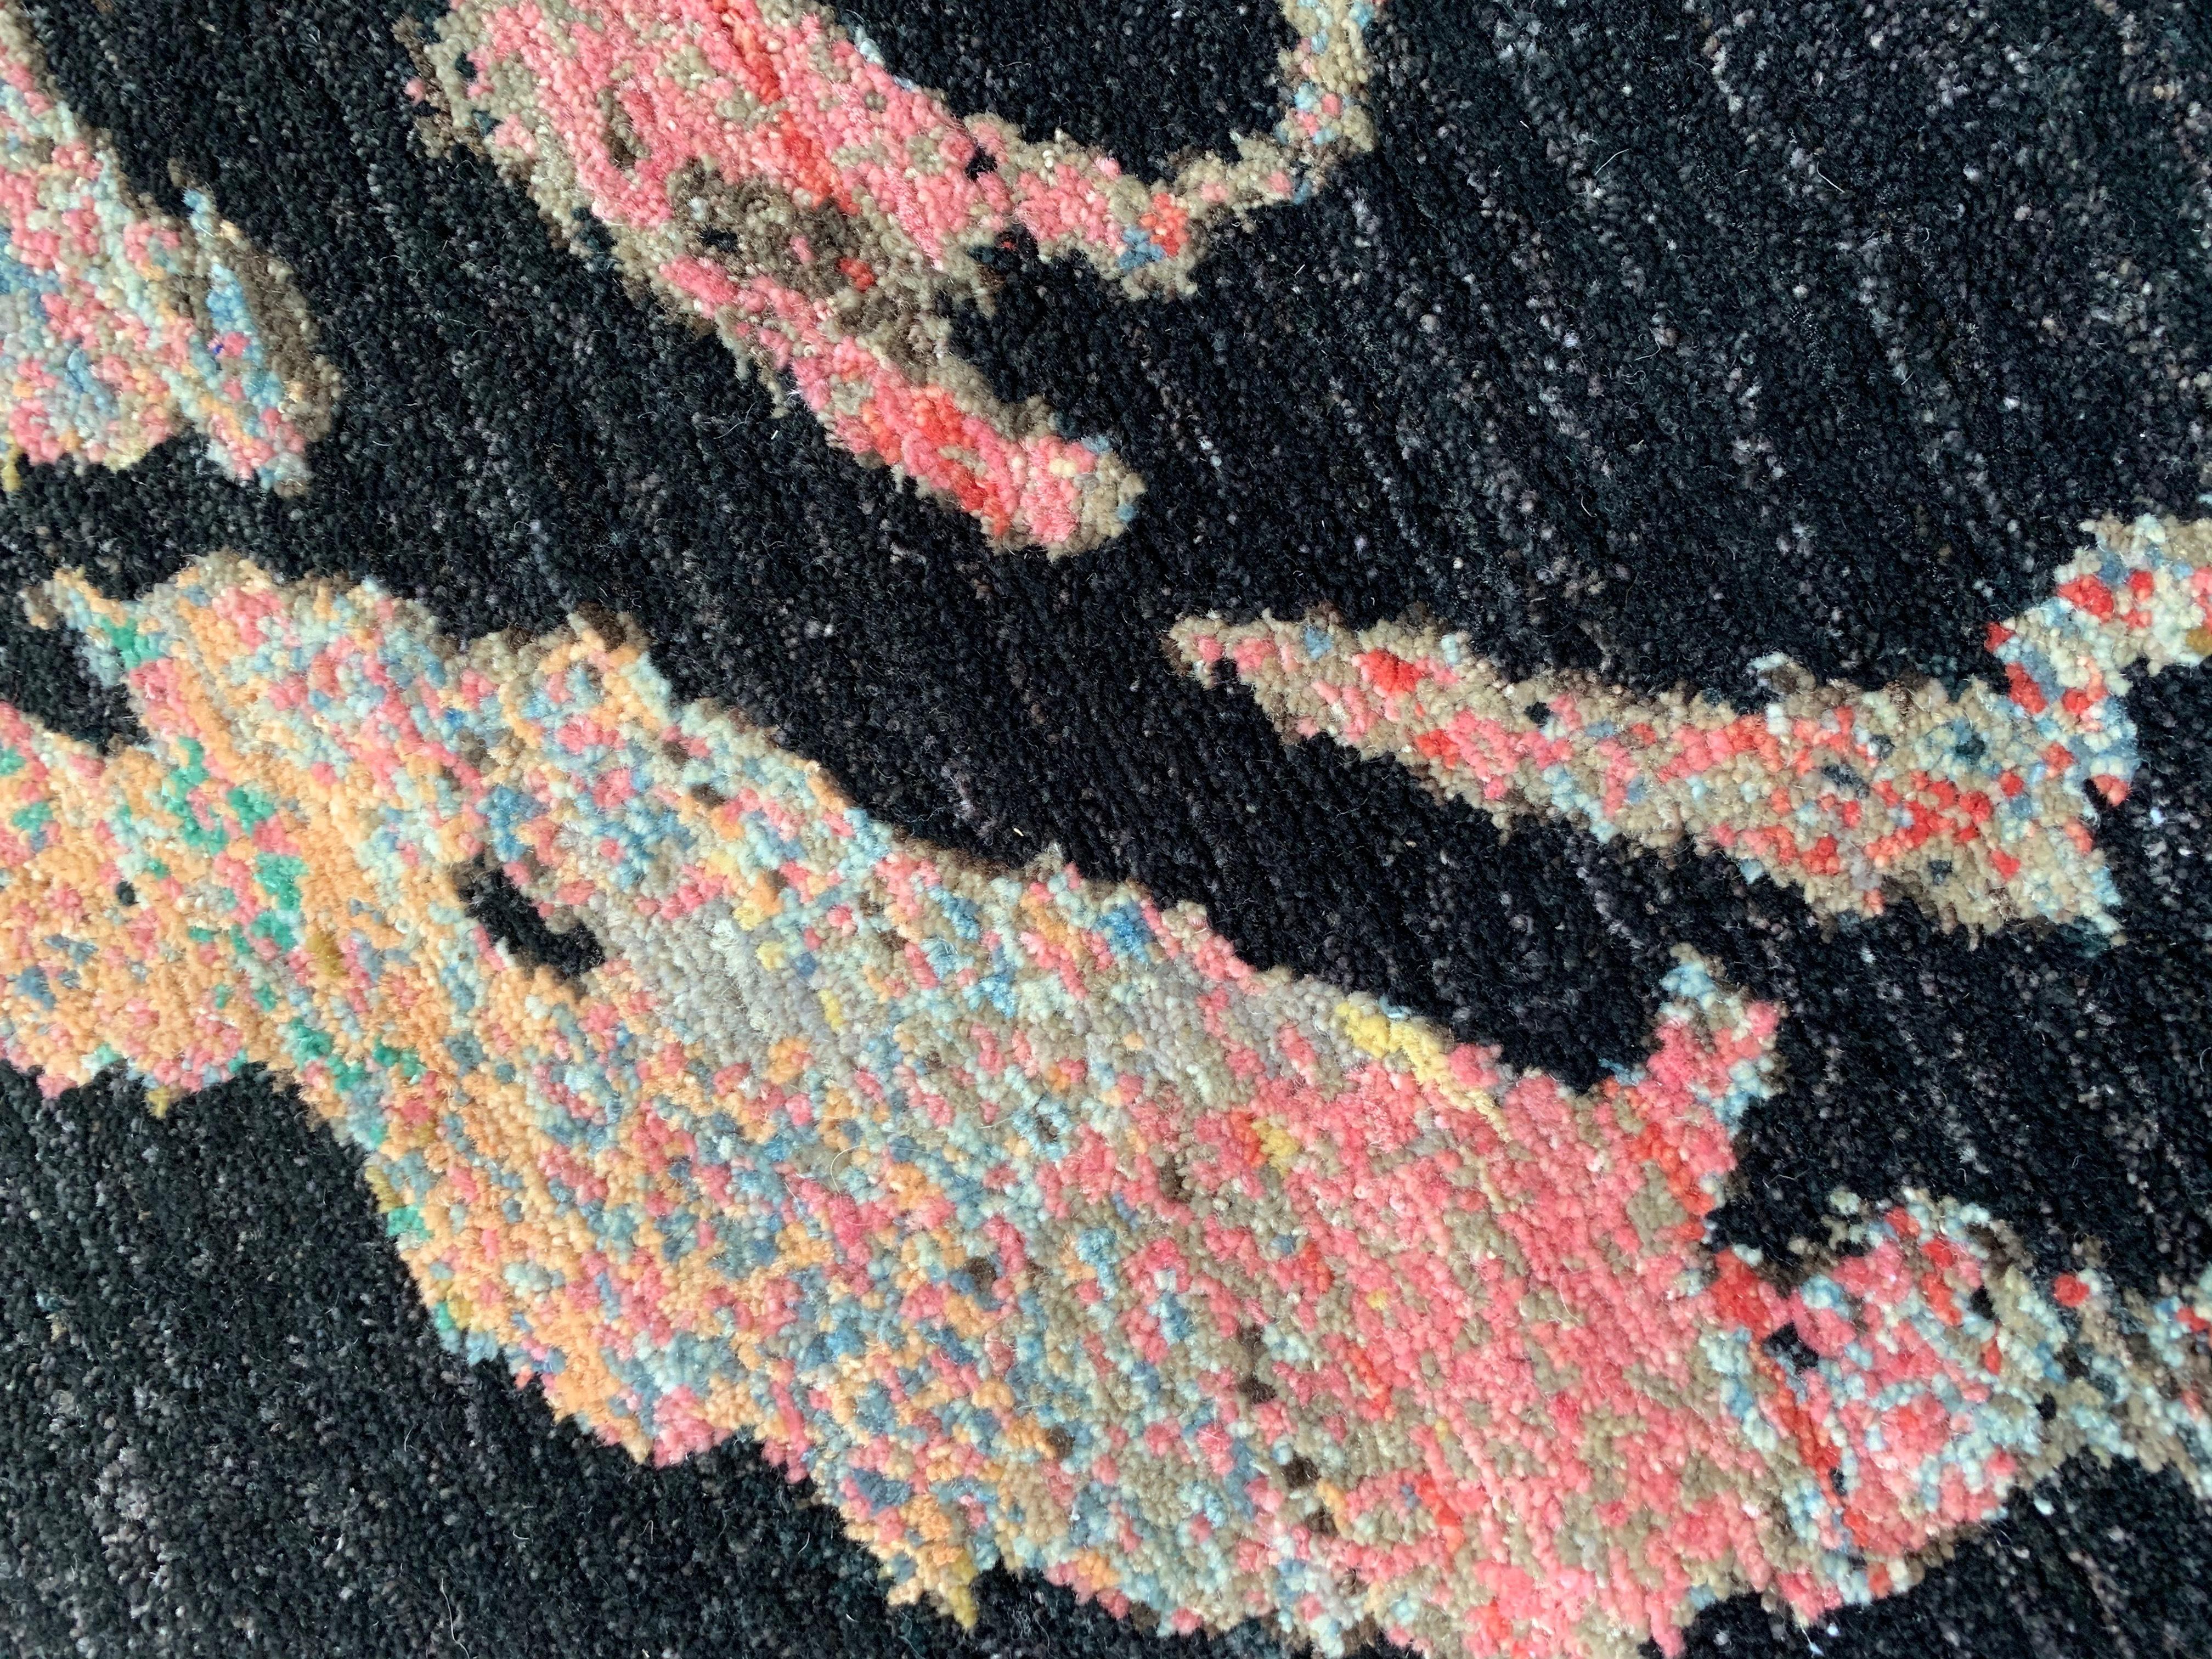 Seek One's Kunst gewebt in einem wunderschönen handgefertigten Teppich, hergestellt in Afghanistan aus Ghazni Wolle.   Limitierte Auflage von 10 Stück.  Der Künstler hat die Rosen fotografiert und ihnen dann seinen typischen Pop-Stil verliehen.  